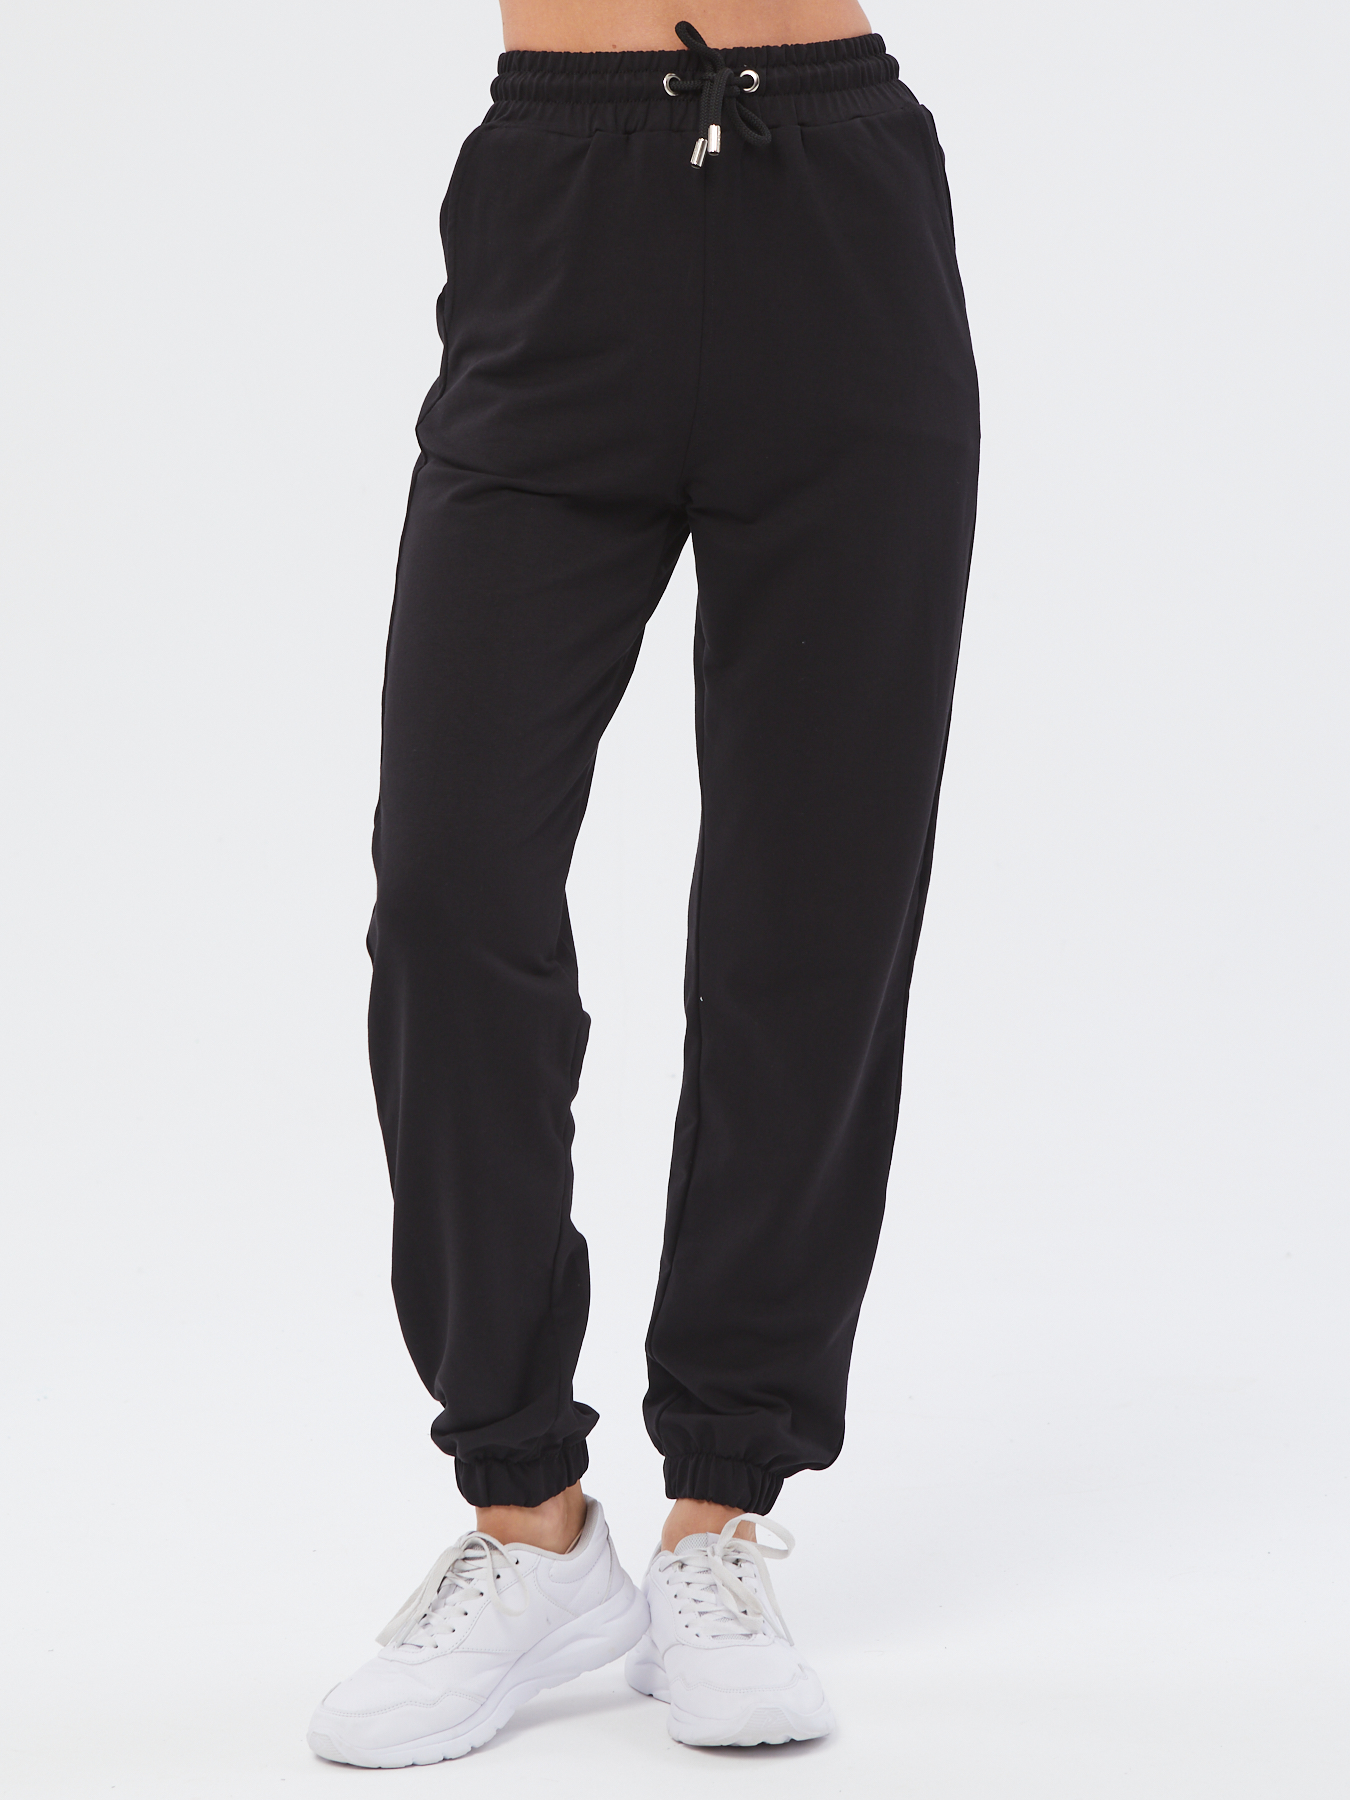 Спортивные брюки женские Still-expert б5 черные 48/165-180